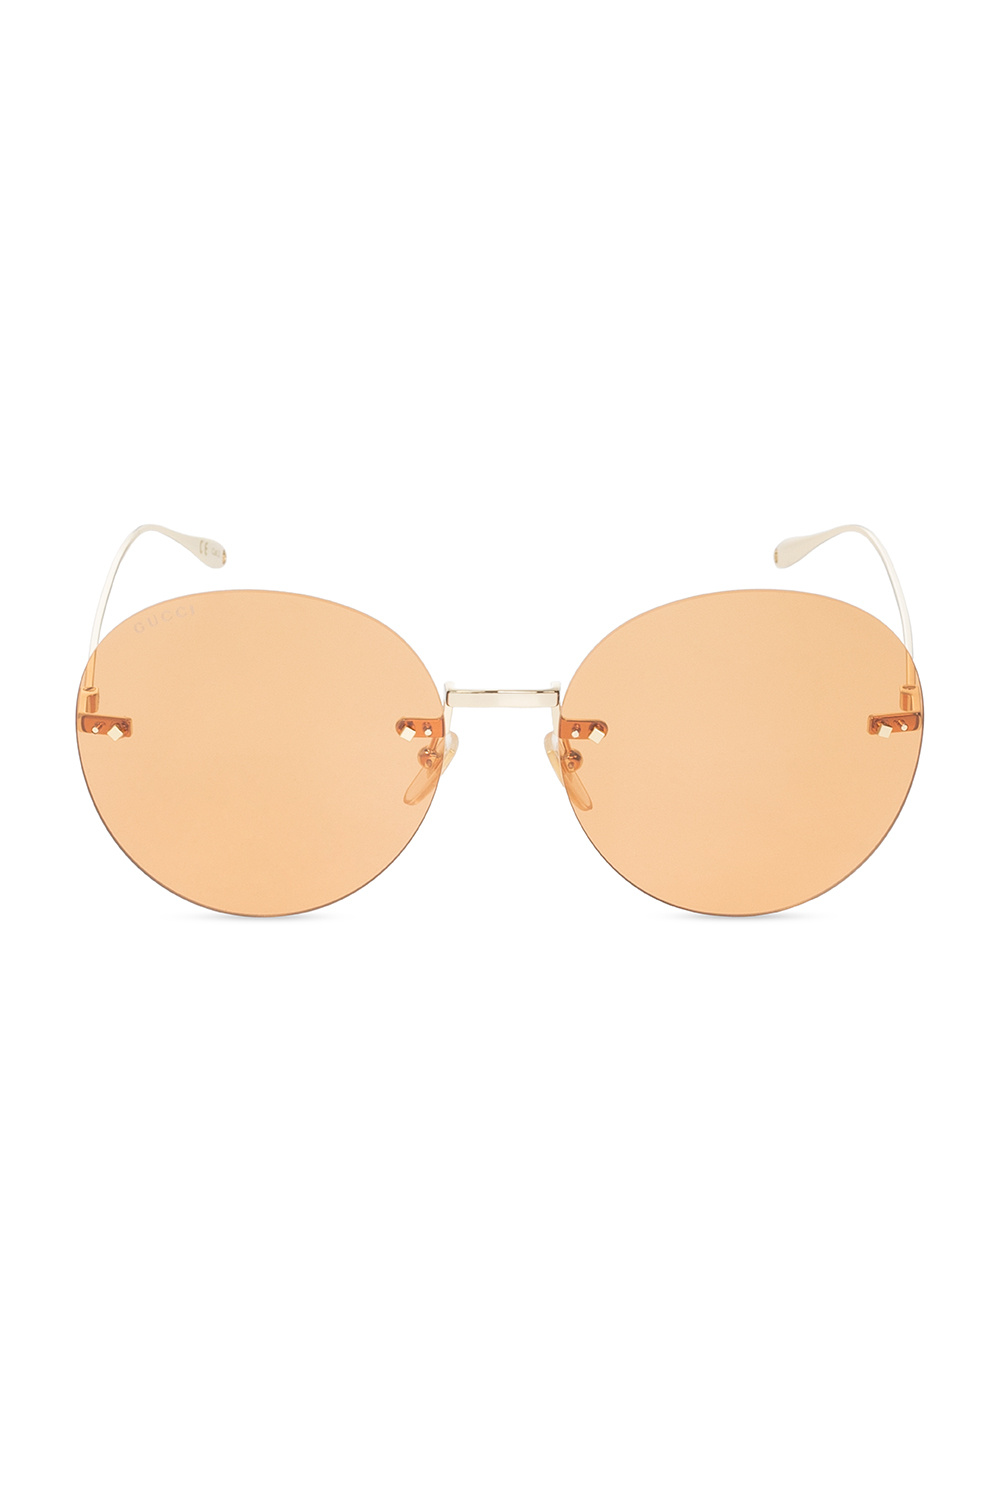 Gucci sunglasses Corfu ‘Gucci Tiger’ collection